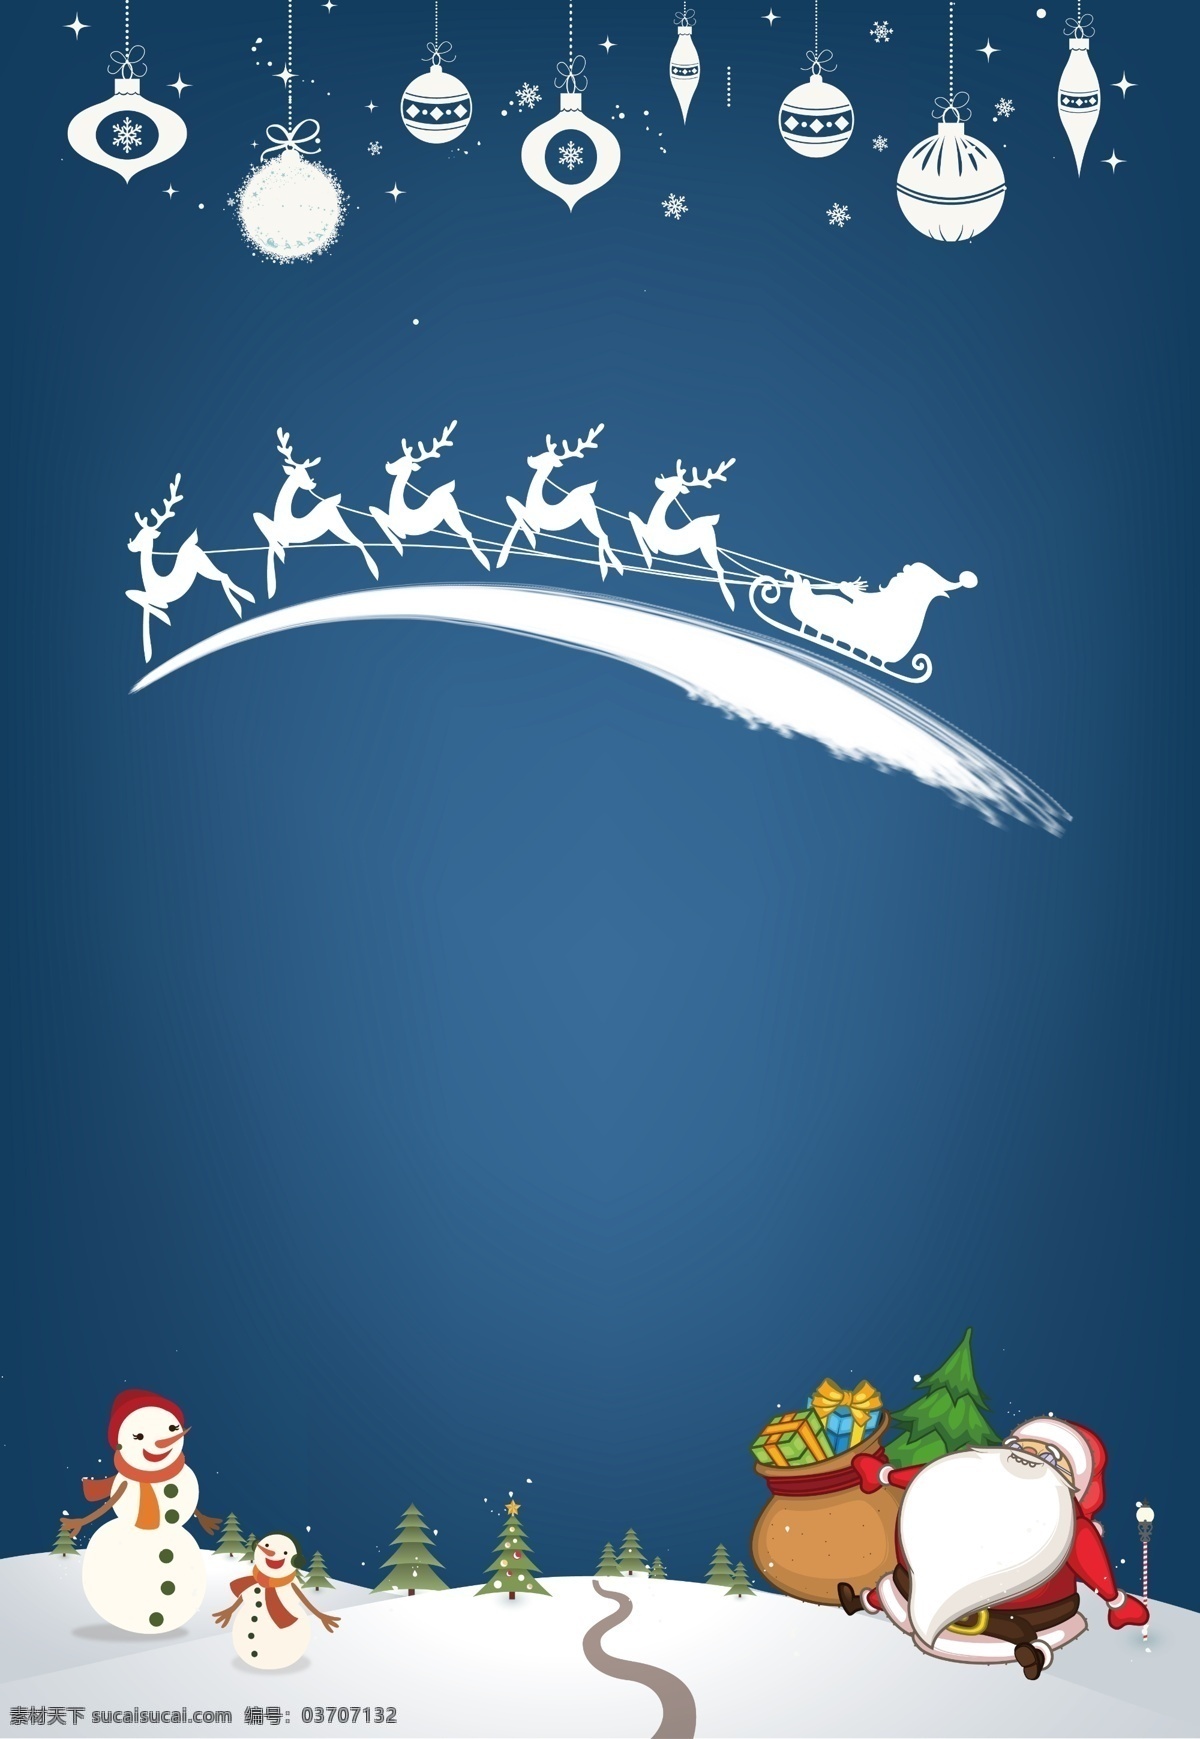 简约 雪白 麋鹿 平安夜 背景 雪人 圣诞背景 圣诞老人 背景素材 广告背景 雪白麋鹿 圣诞礼物 装饰品 圣诞节背景 圣诞来了 圣诞活动背景 节日背景